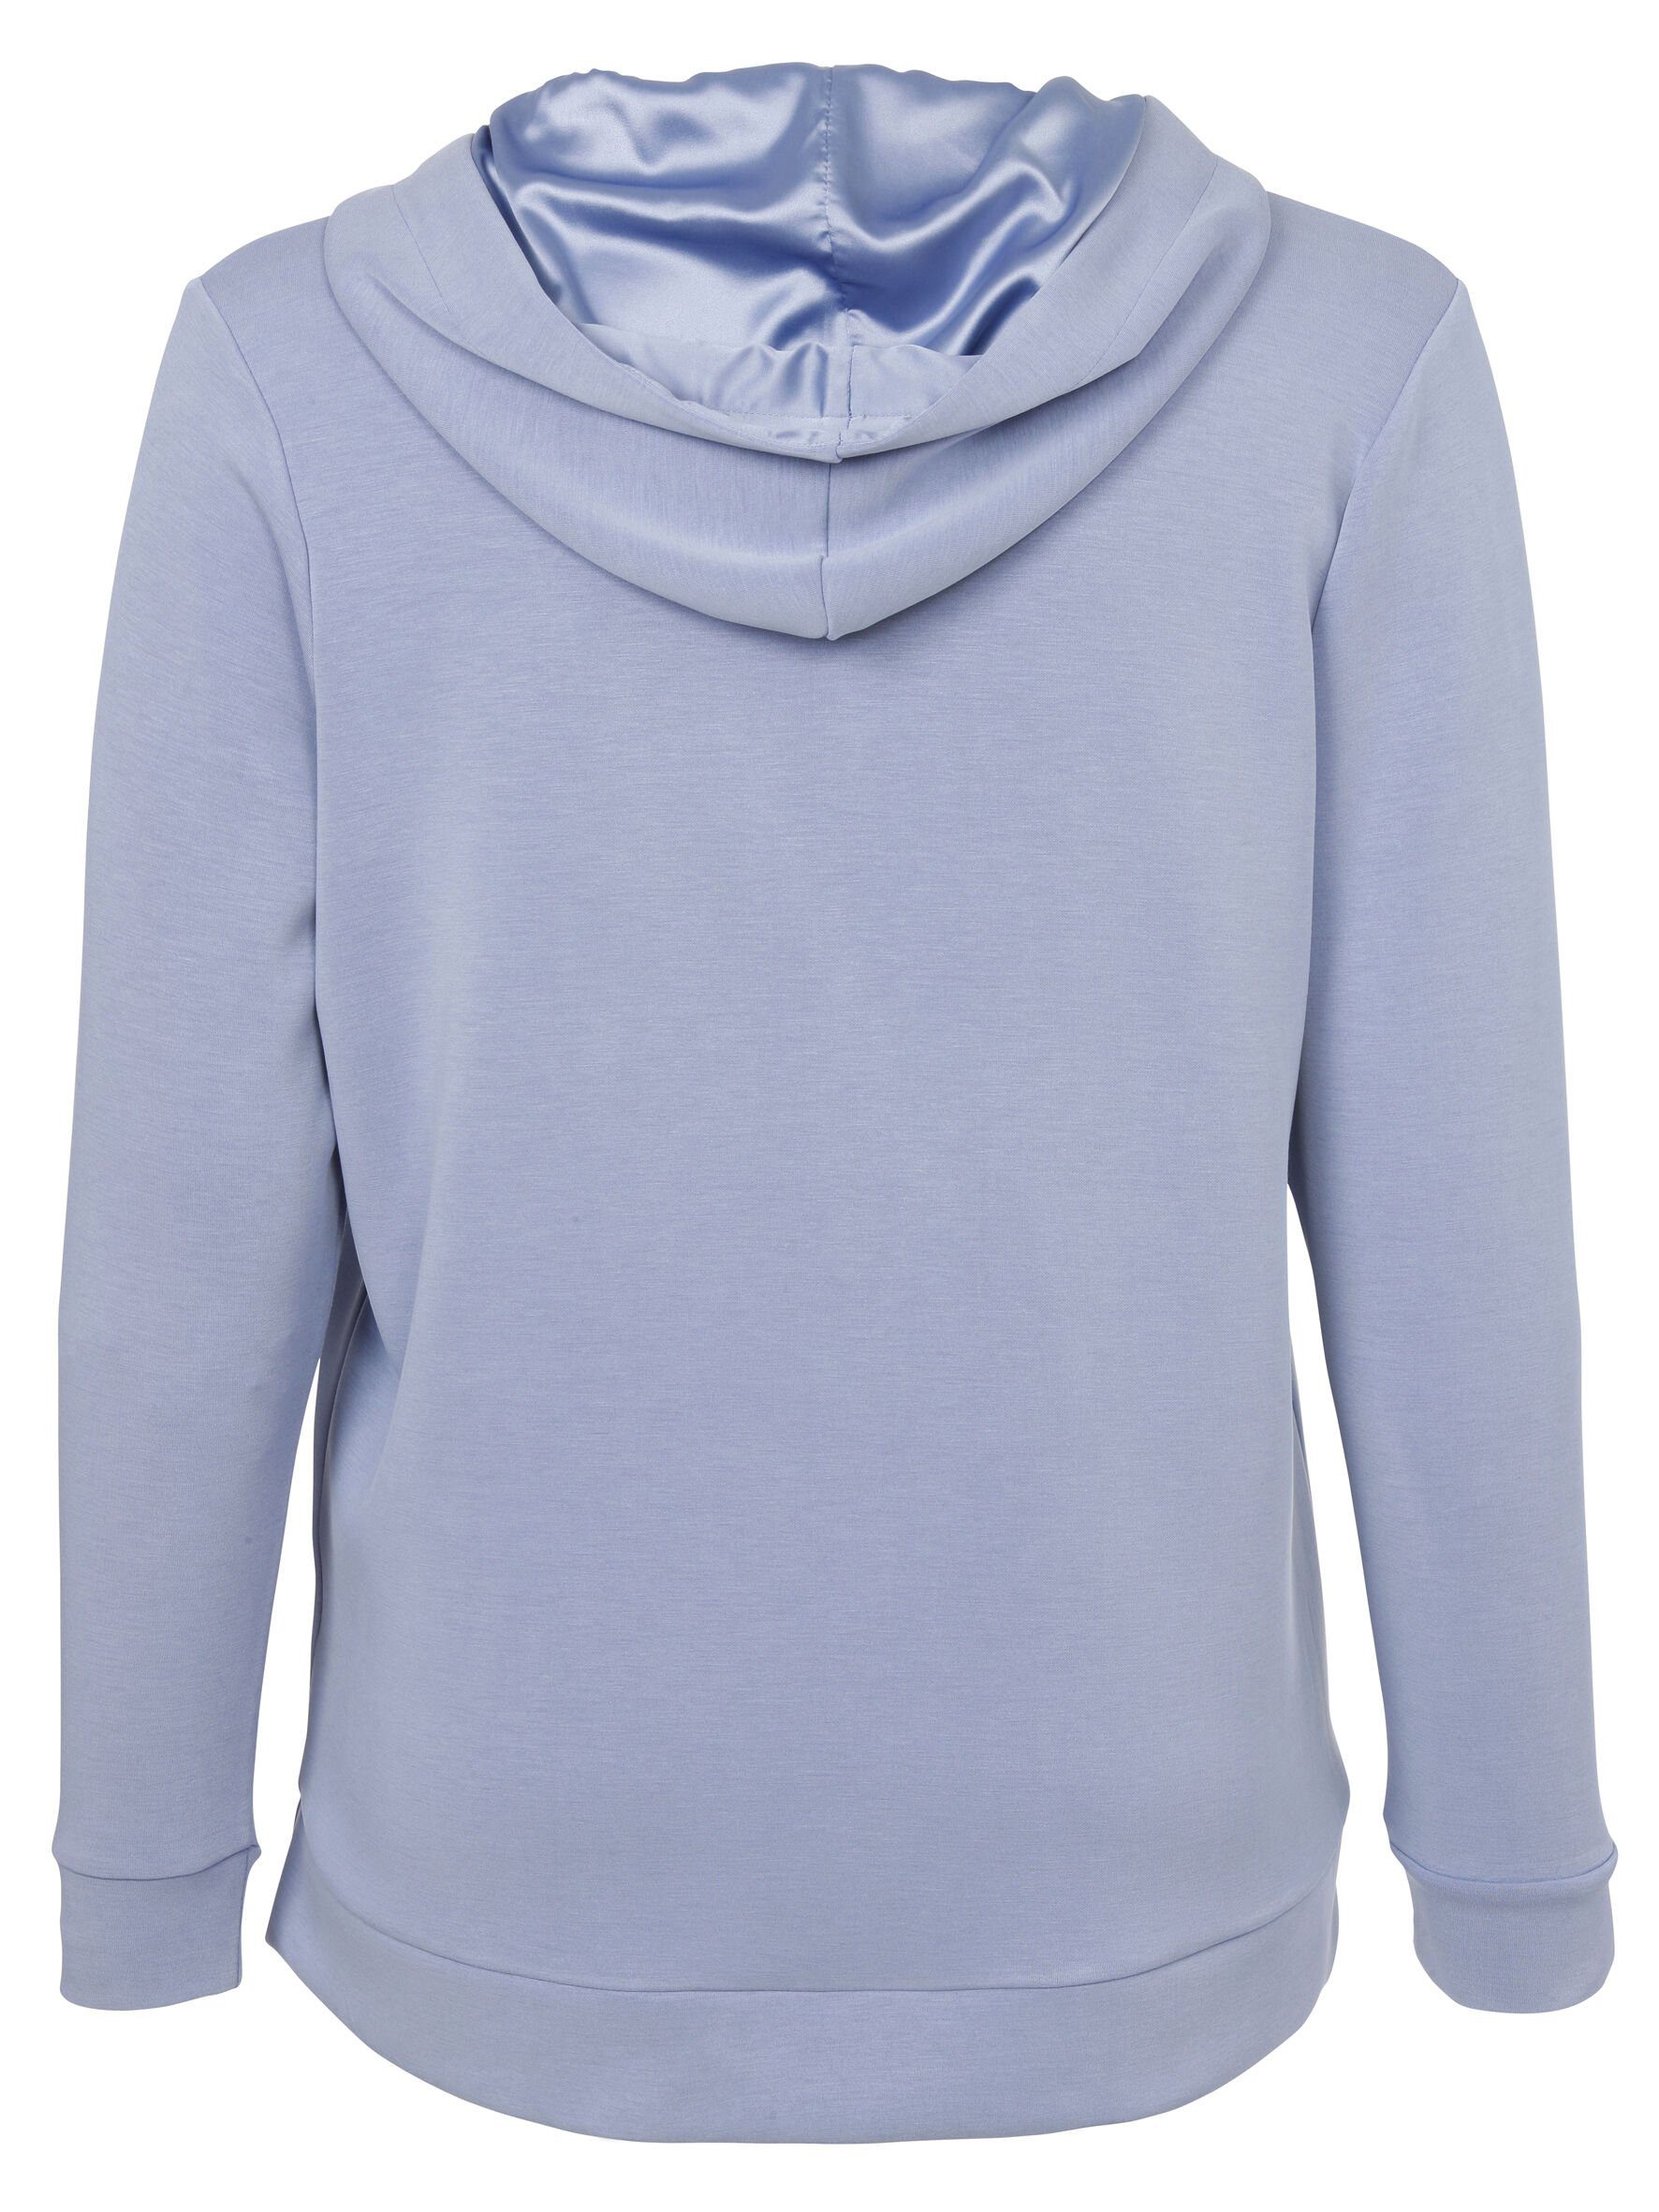 Stil Sweatshirt DUE Sportives Sweatshirt mit Viskosemischung VIA rauchblau hochwertigen in APPIA unifarbenem